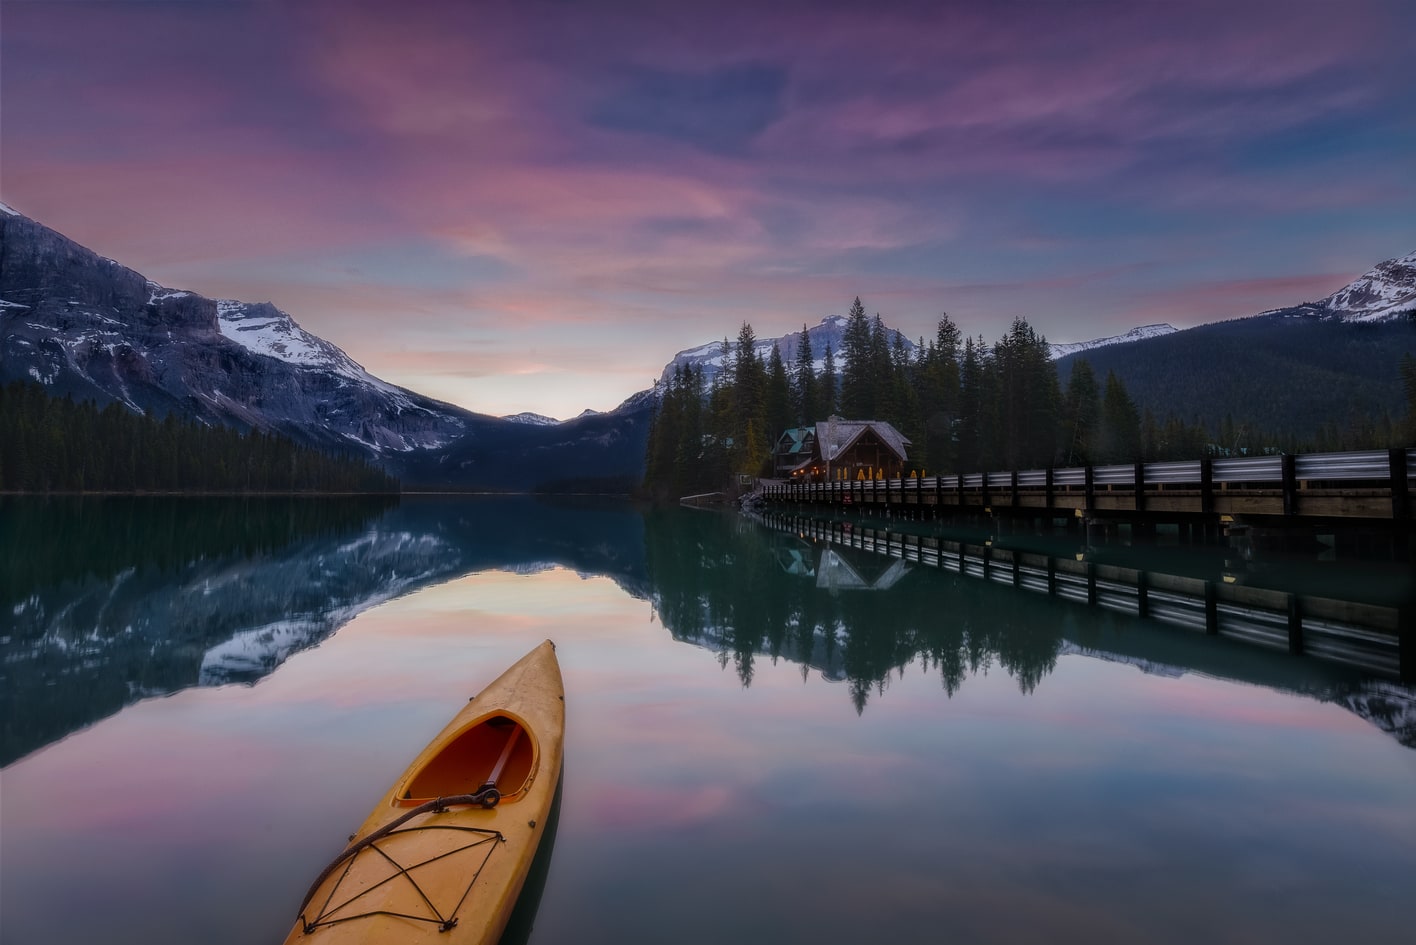 Emerald Lake viajes fotograficos organizados en grupo